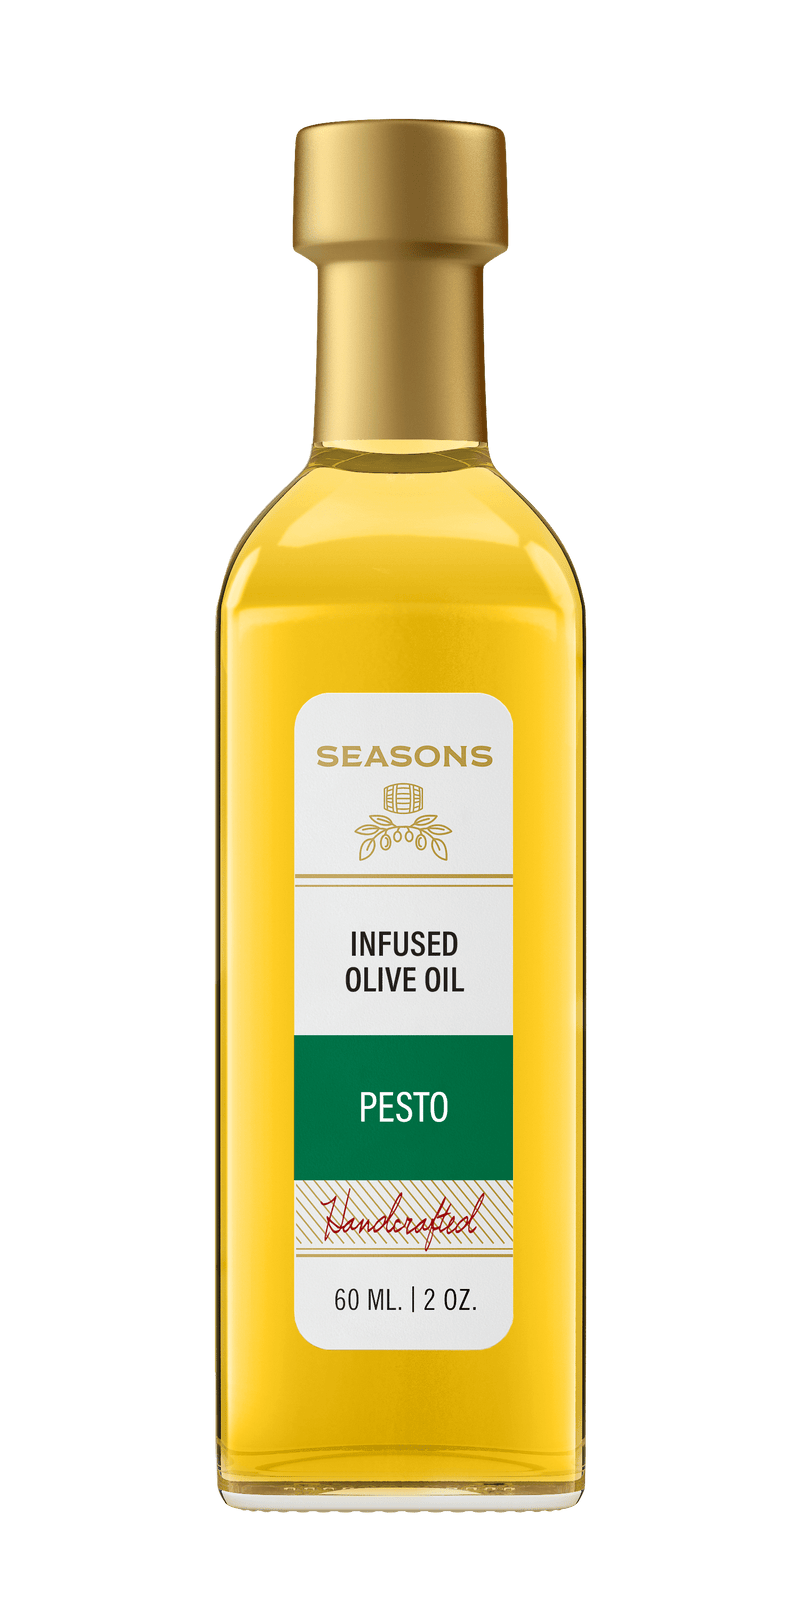 Millpress Imports Infused Olive Oil 60mL Pesto Infused Olive Oil